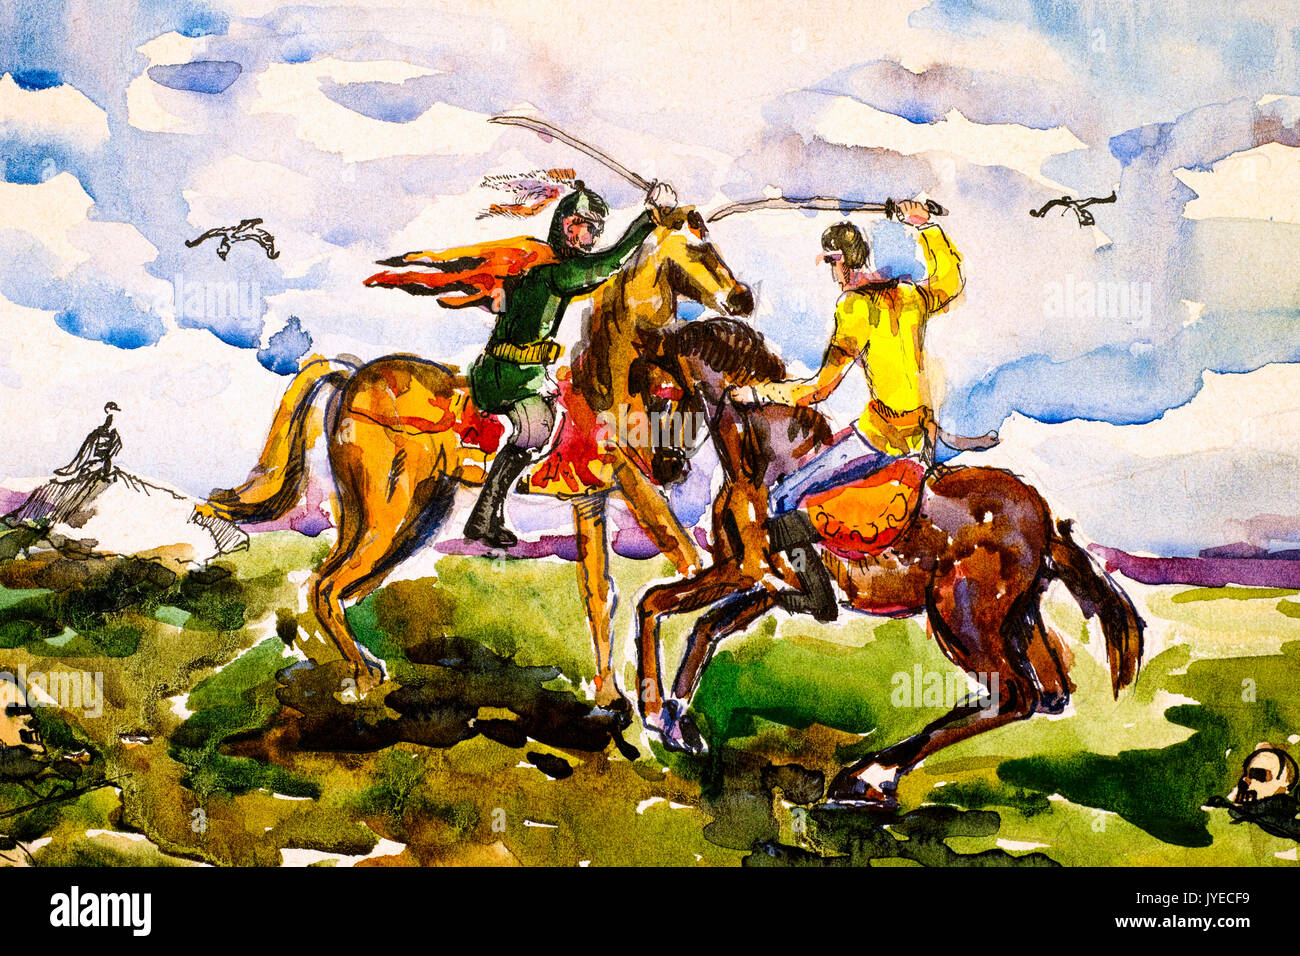 Zwei alte Krieger kämpfen mit Säbel zu Pferd. Aquarell Malerei. Stockfoto